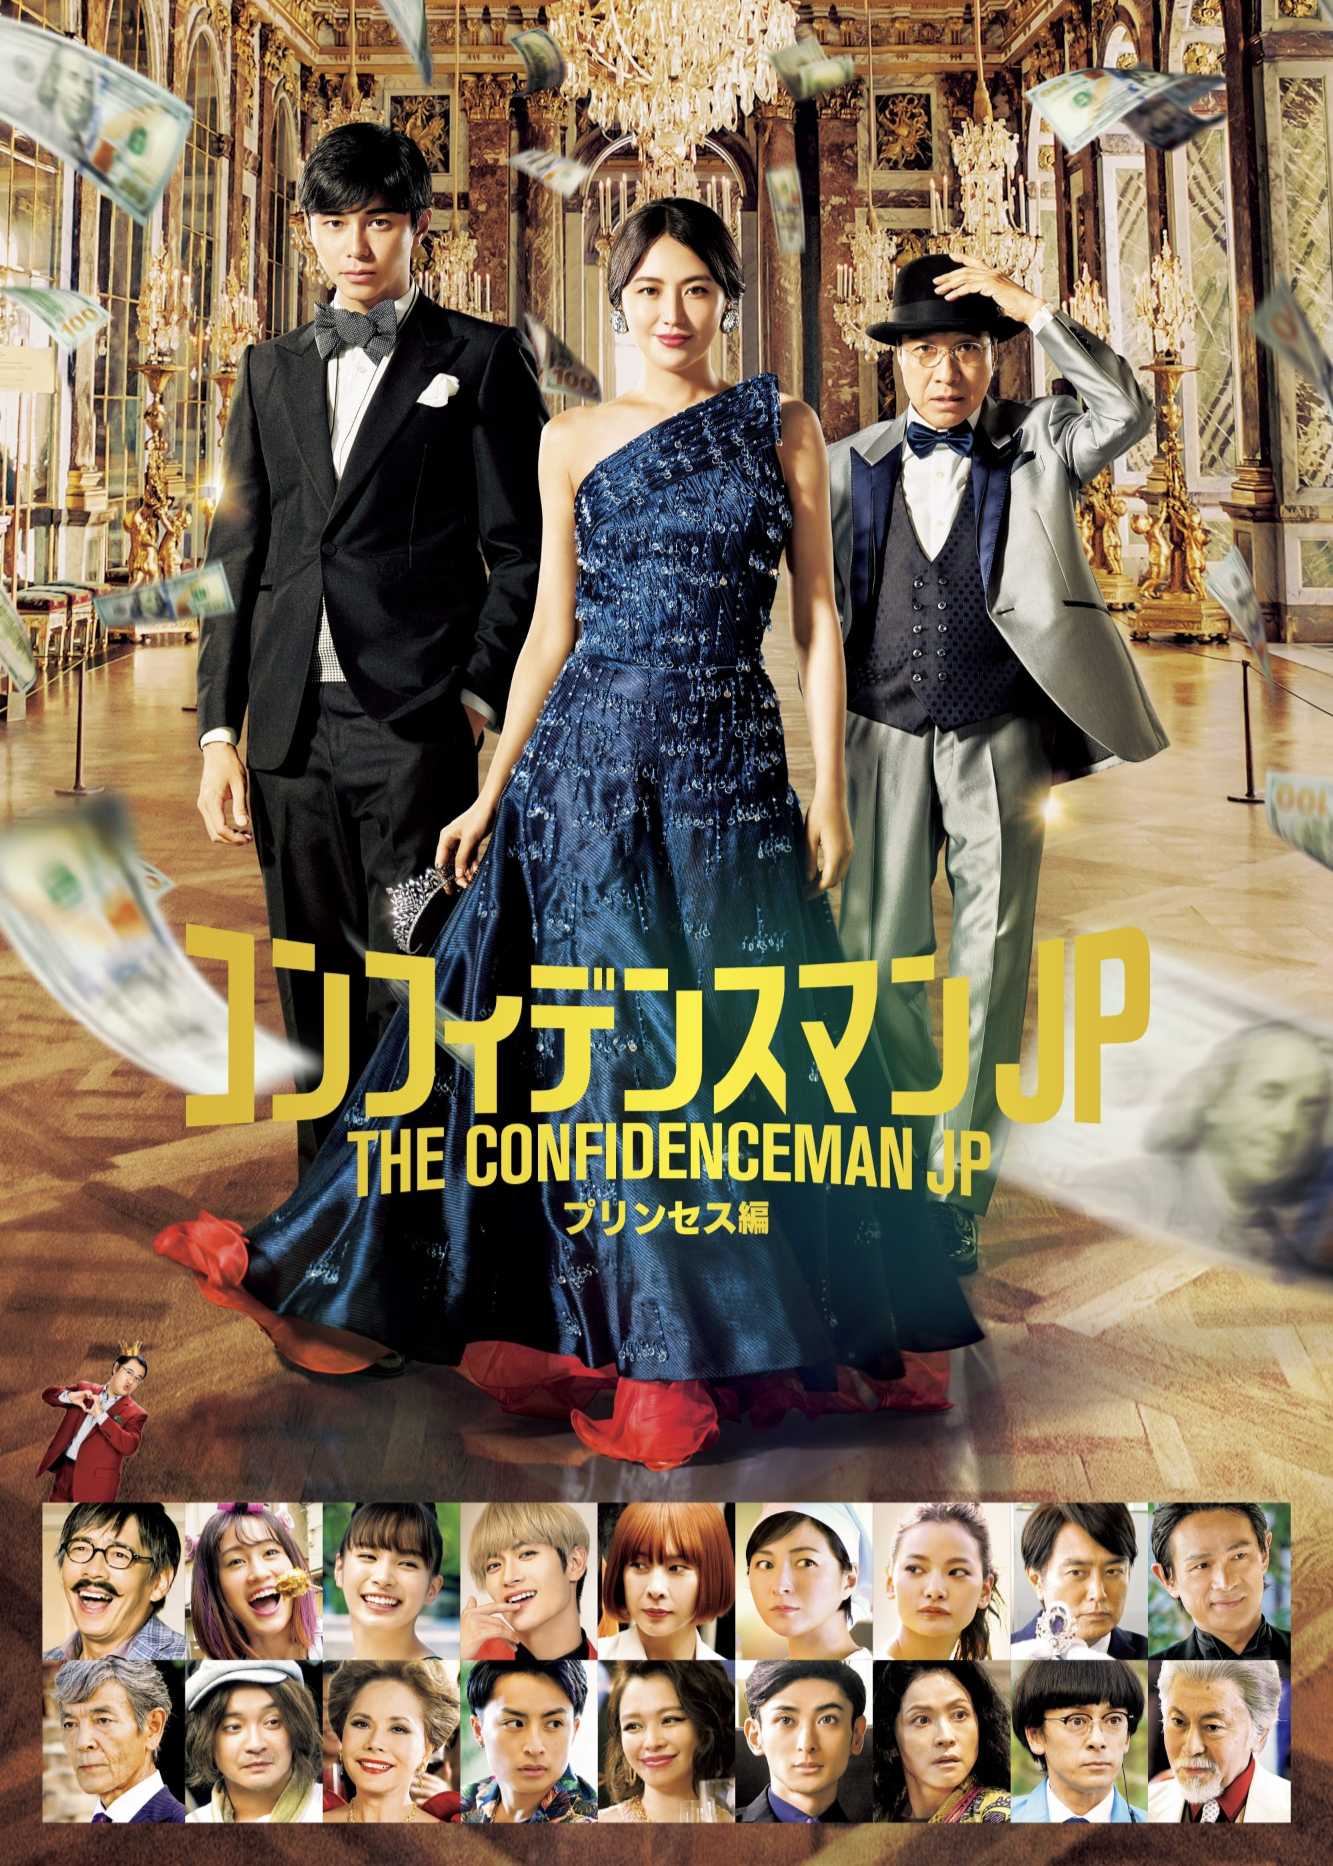 The confidence man jp: princess - The confidence man jp: princess